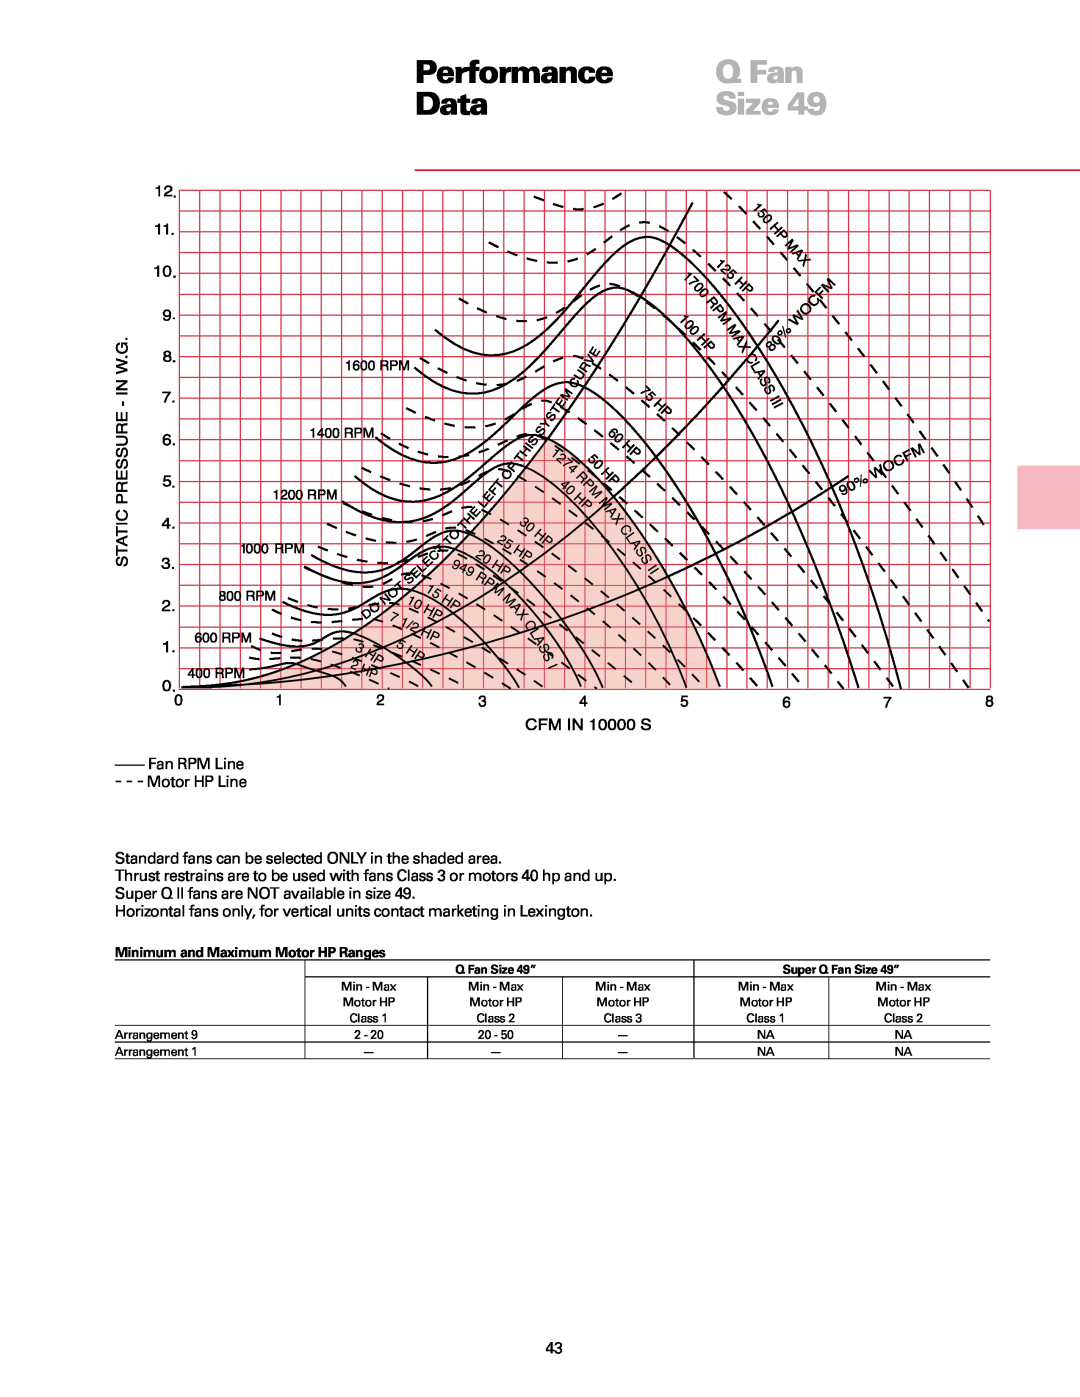 Trane manual Performance, Q Fan, Data, Size, Fan RPM Line Motor HP Line 